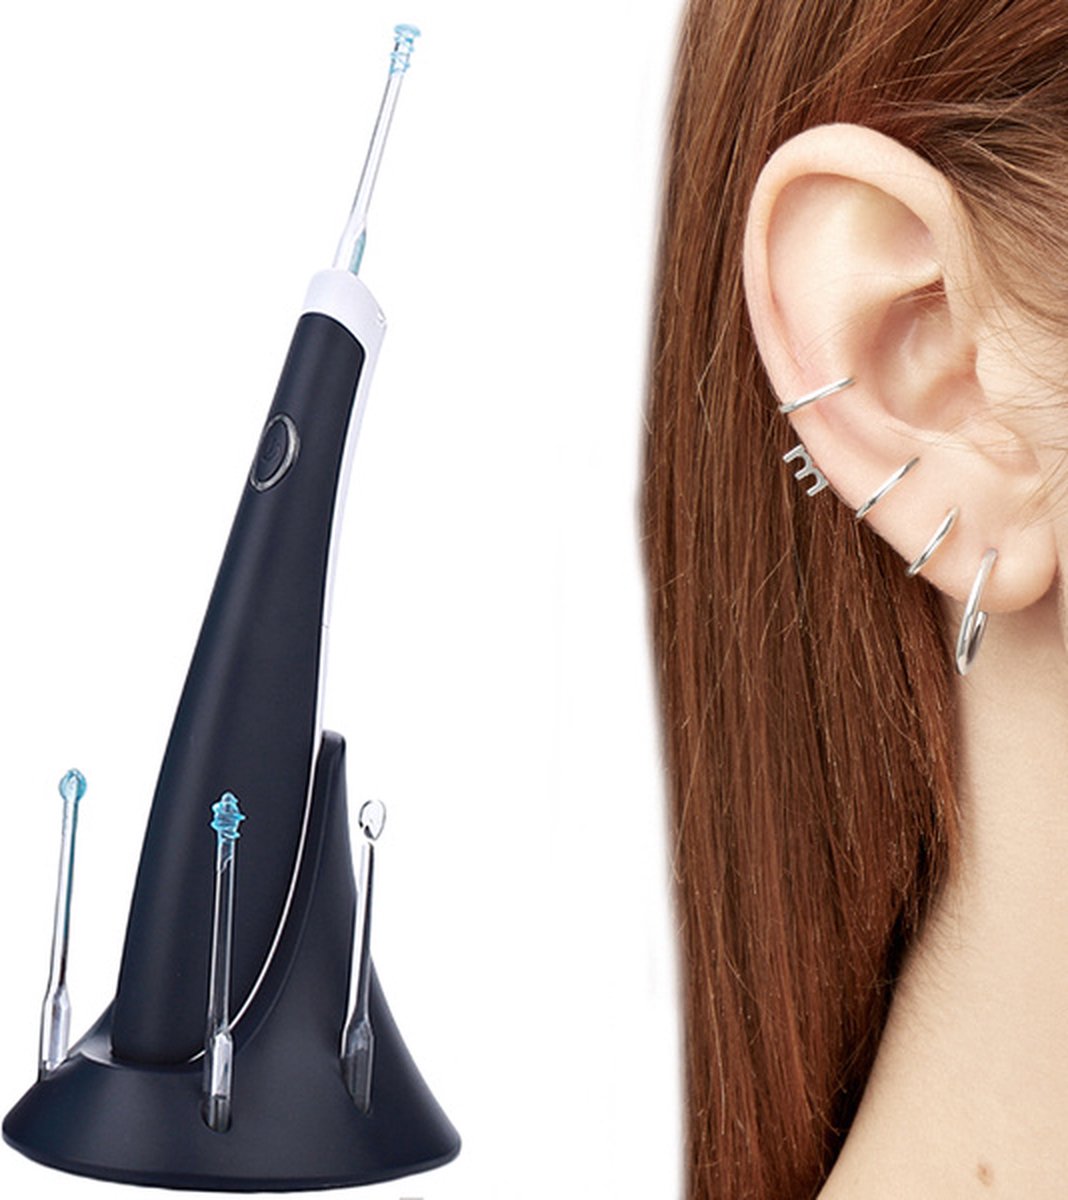 WaxVac Nettoyeur d'oreille électrique doux et efficace pour